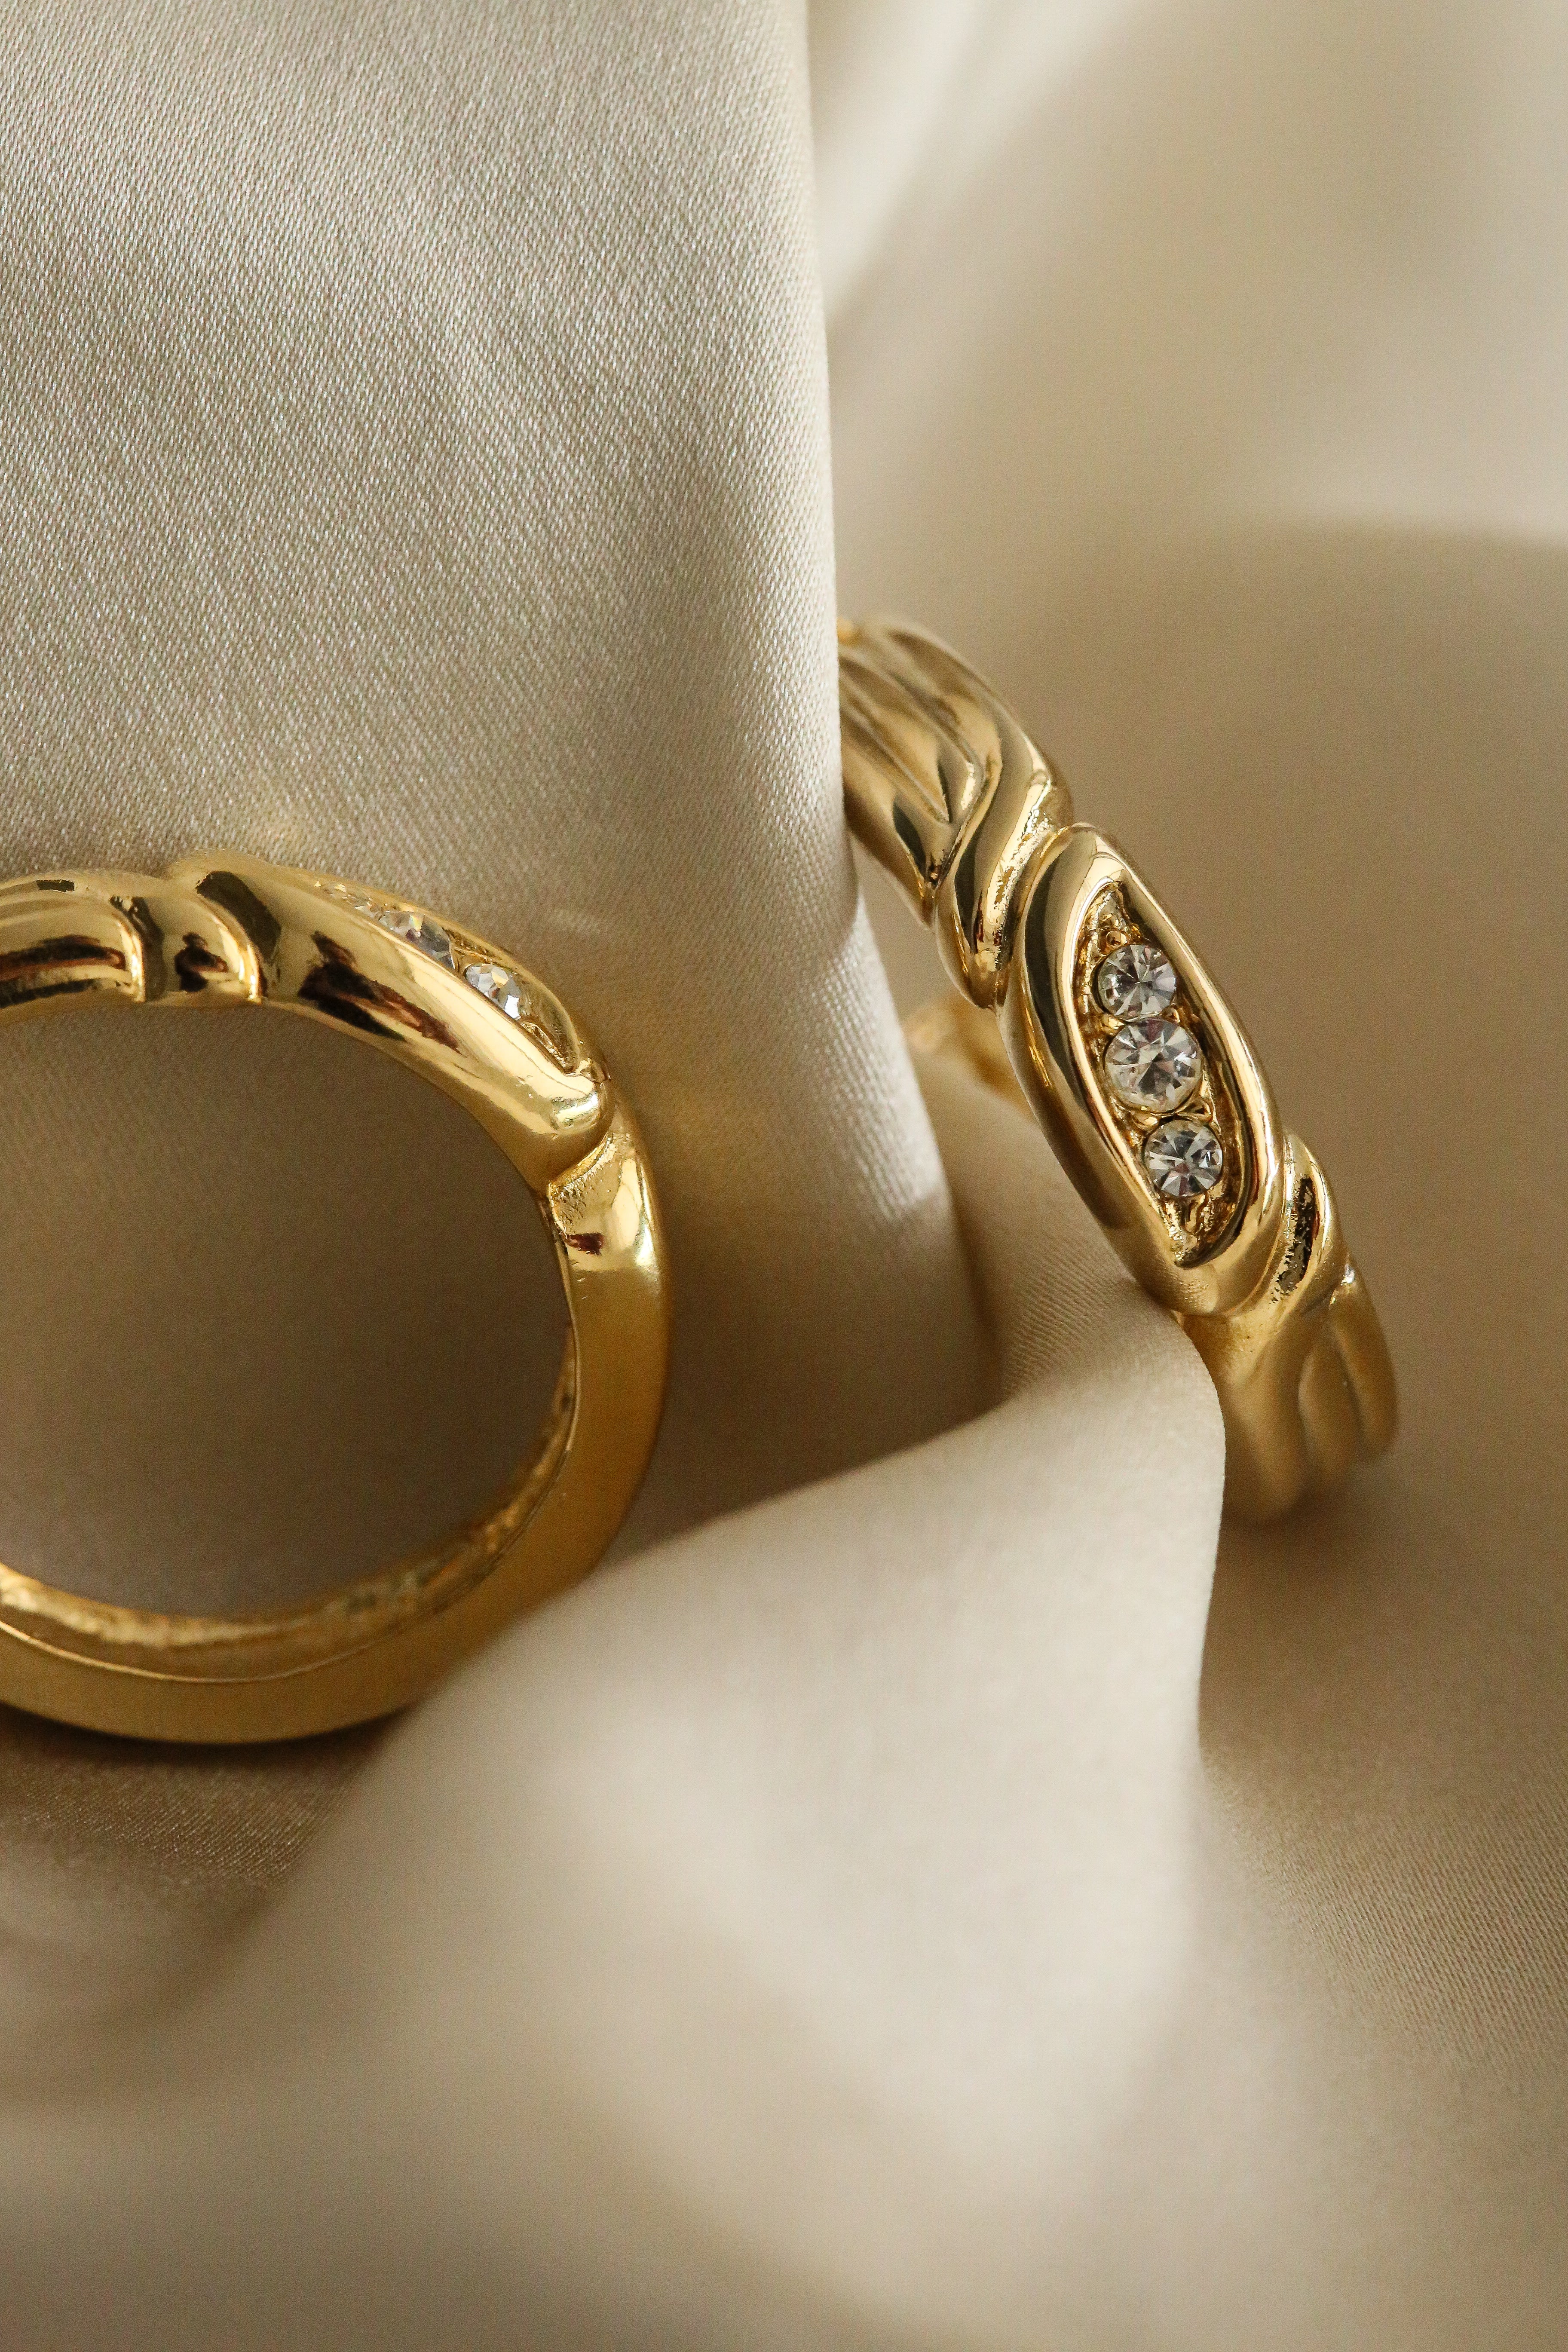 Serena (Vintage) Hoops - Boutique Minimaliste has waterproof, durable, elegant and vintage inspired jewelry